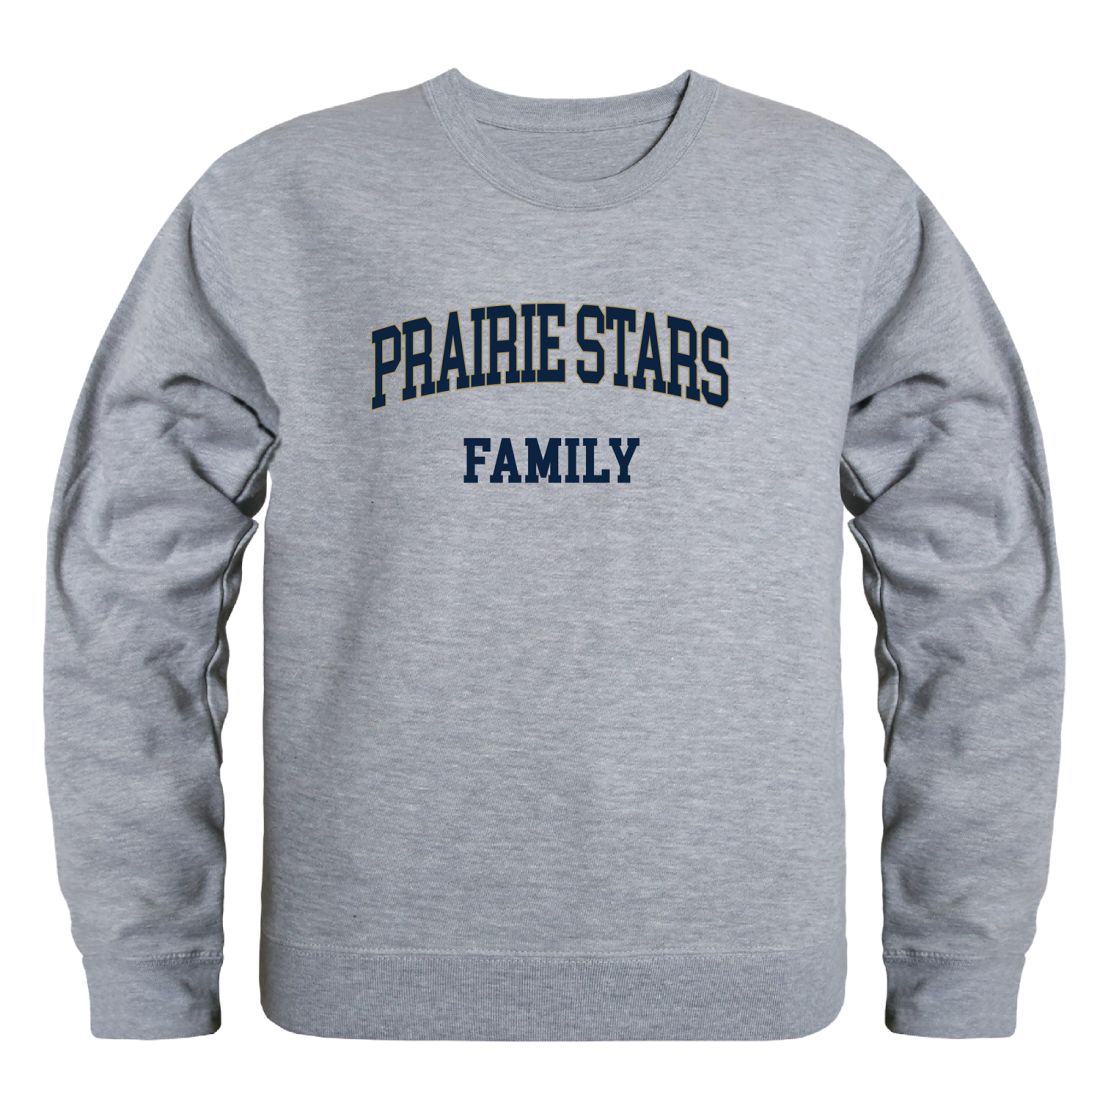 University-of-Illinois-Springfield-Prairie-Stars-Family-Fleece-Crewneck-Pullover-Sweatshirt